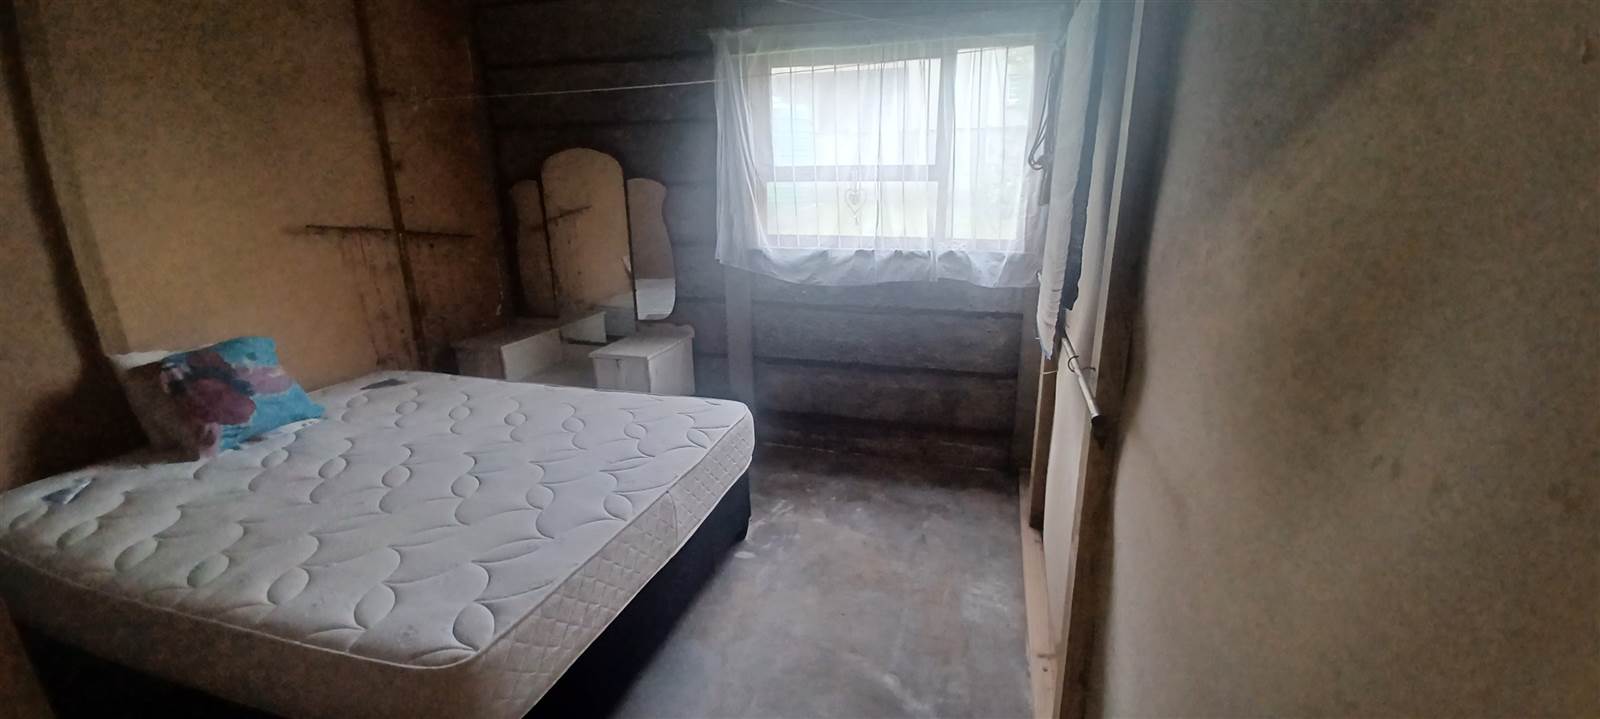 2 Bed House in Kleinbaai photo number 26